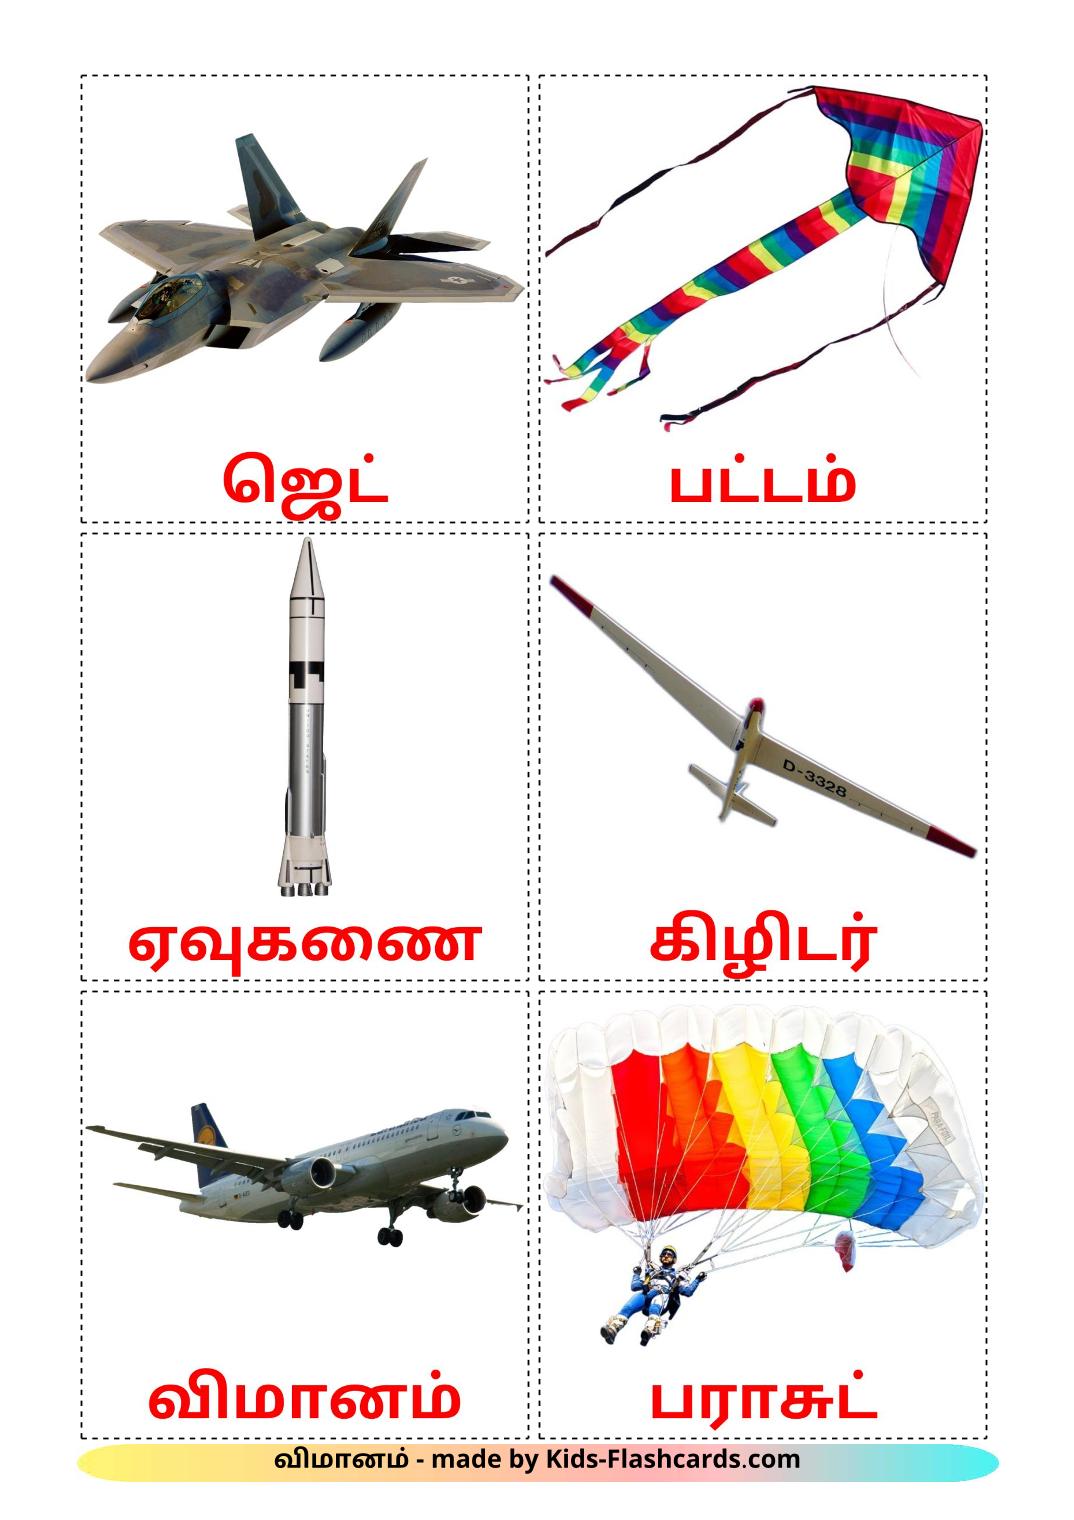 Воздушный транспорт - 14 Карточек Домана на тамильском